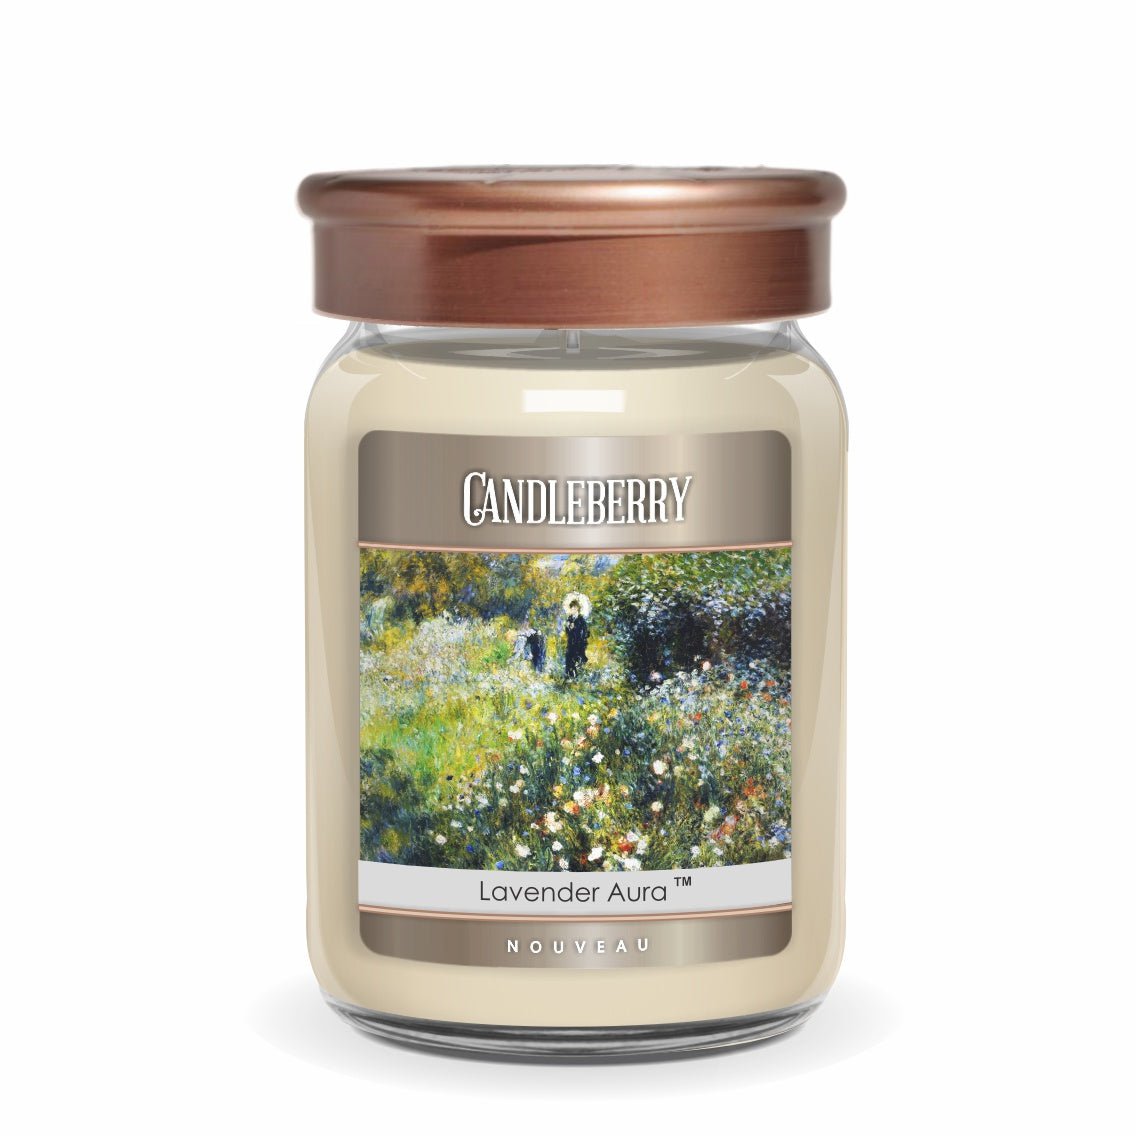 NOUVEAU™ - Lavender Aura™, Large Jar Candle - The Candleberry® Candle Company - Large Jar Candle - The Candleberry Candle Company